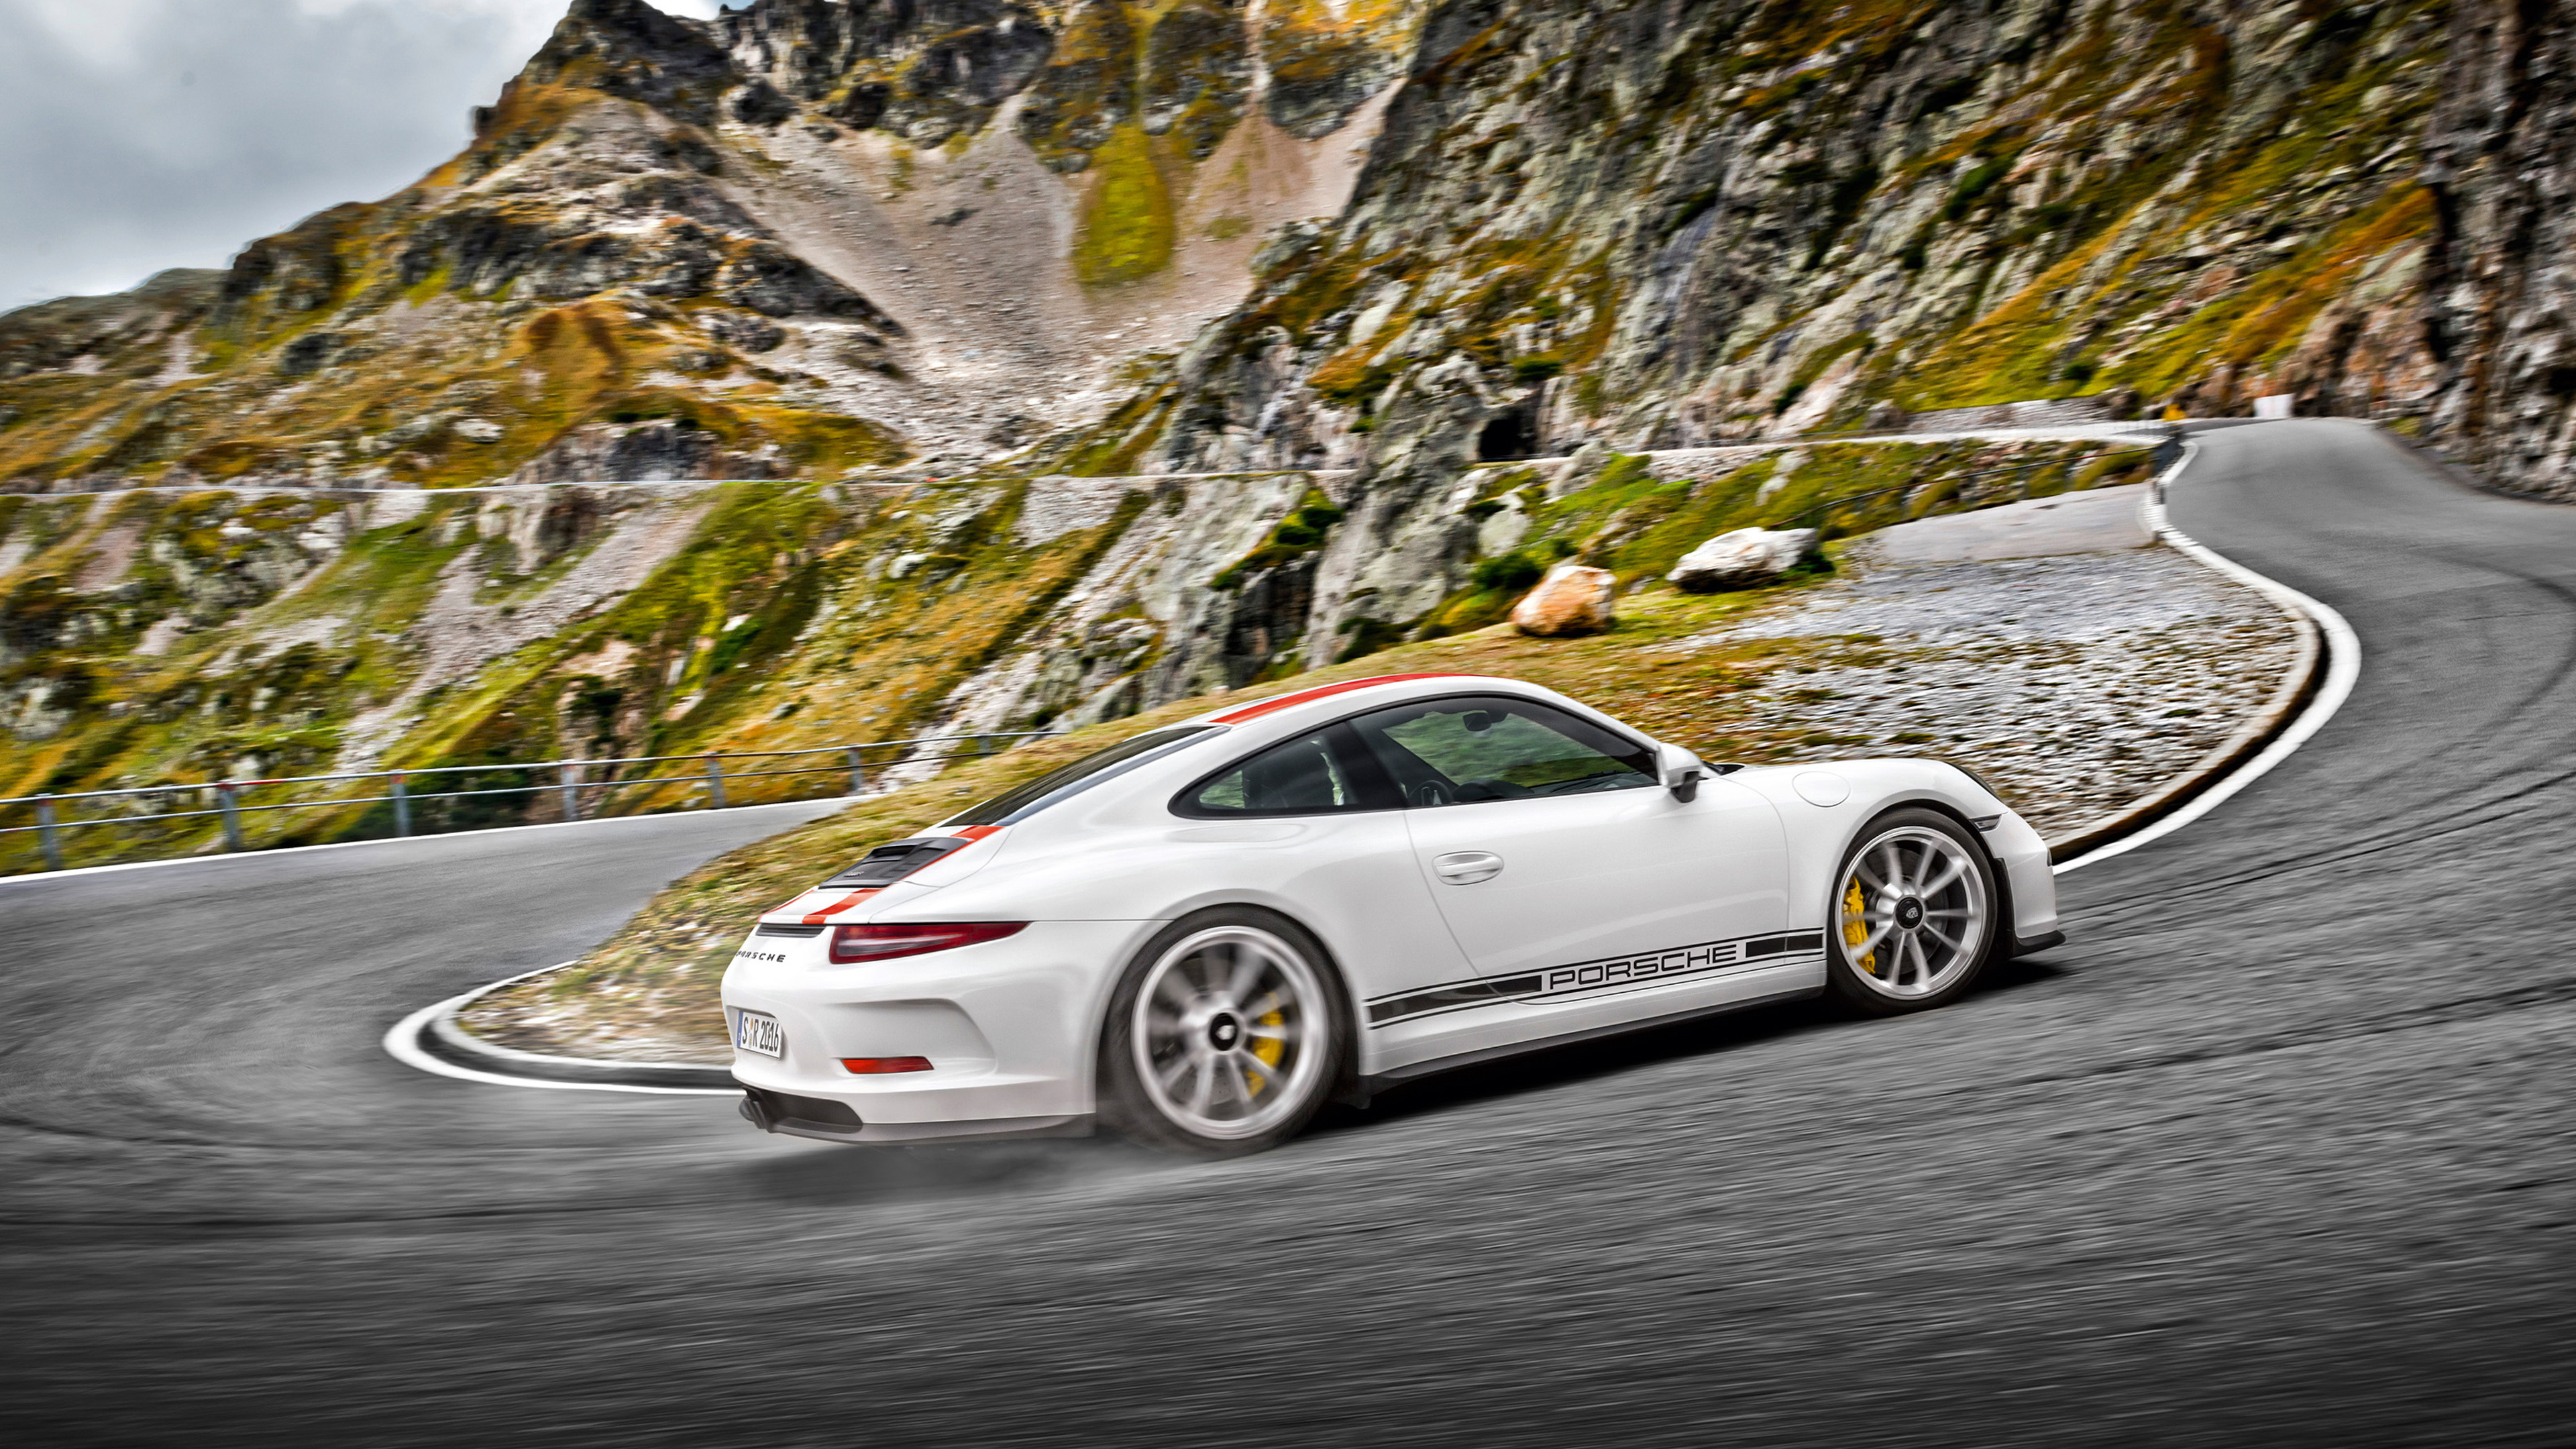 Weißer Porsche 911 Unterwegs. Wallpaper in 3840x2160 Resolution